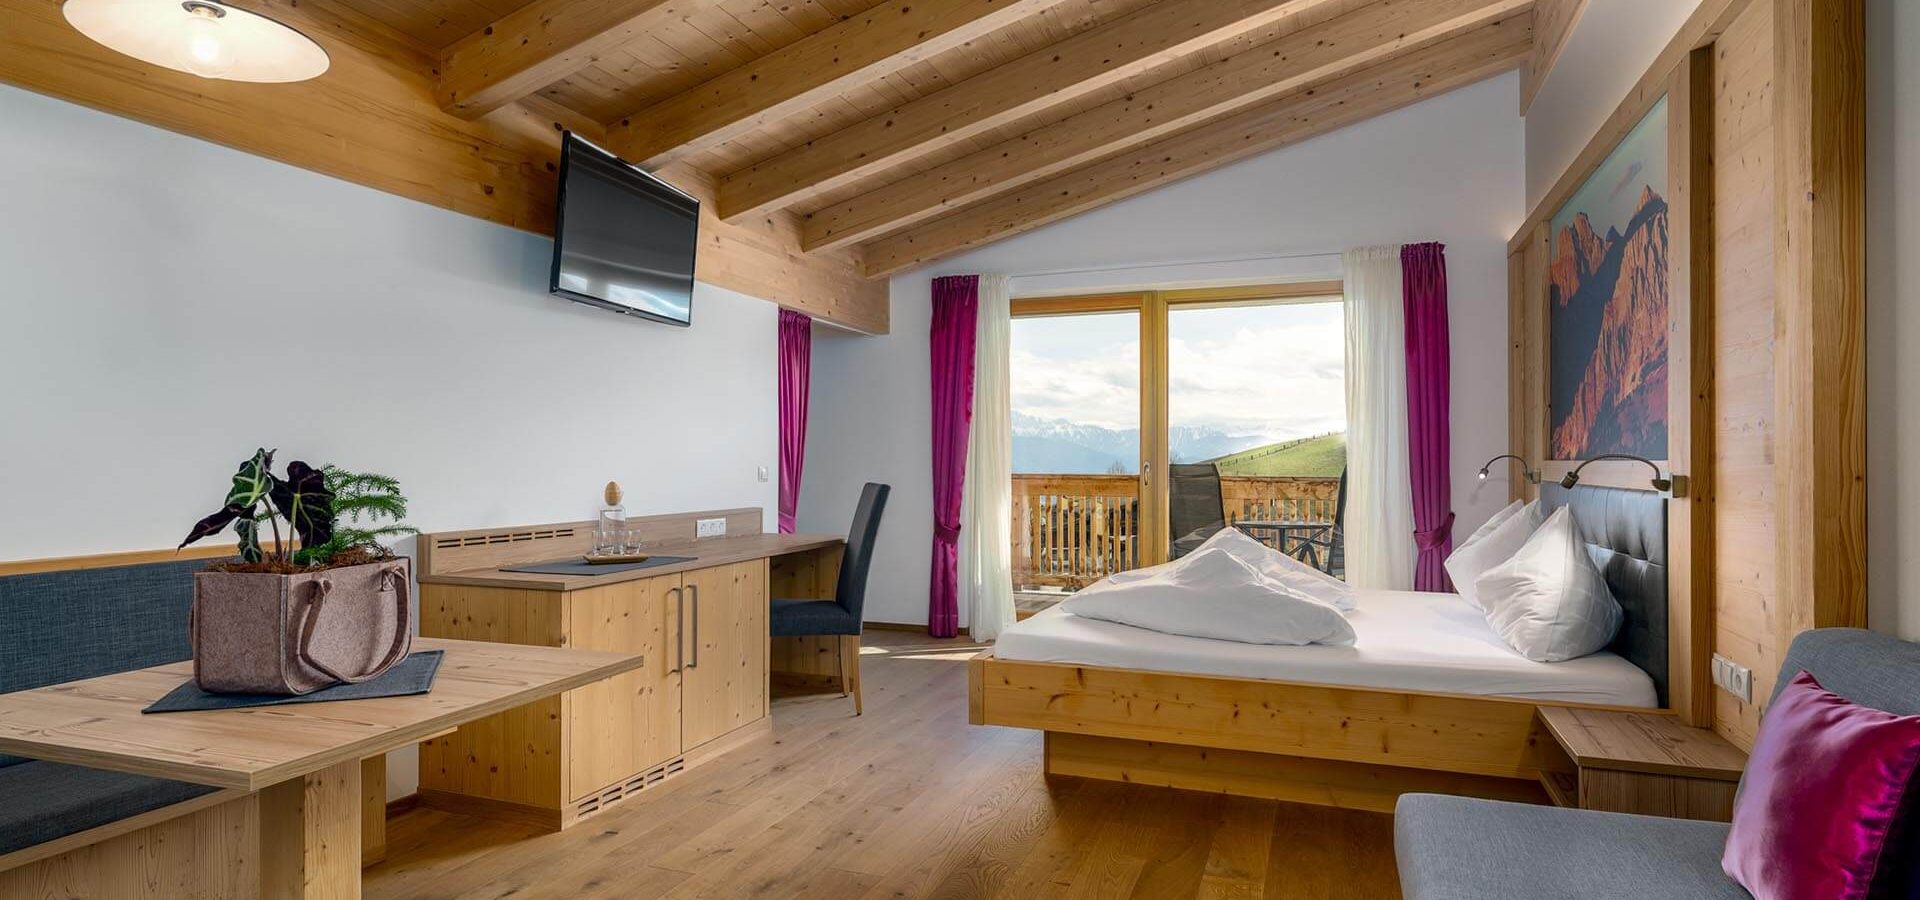 Unterkunft in Meransen Urlaub in Südtirol Almenregion Gitschberg Jochtal Dolomiten (6)